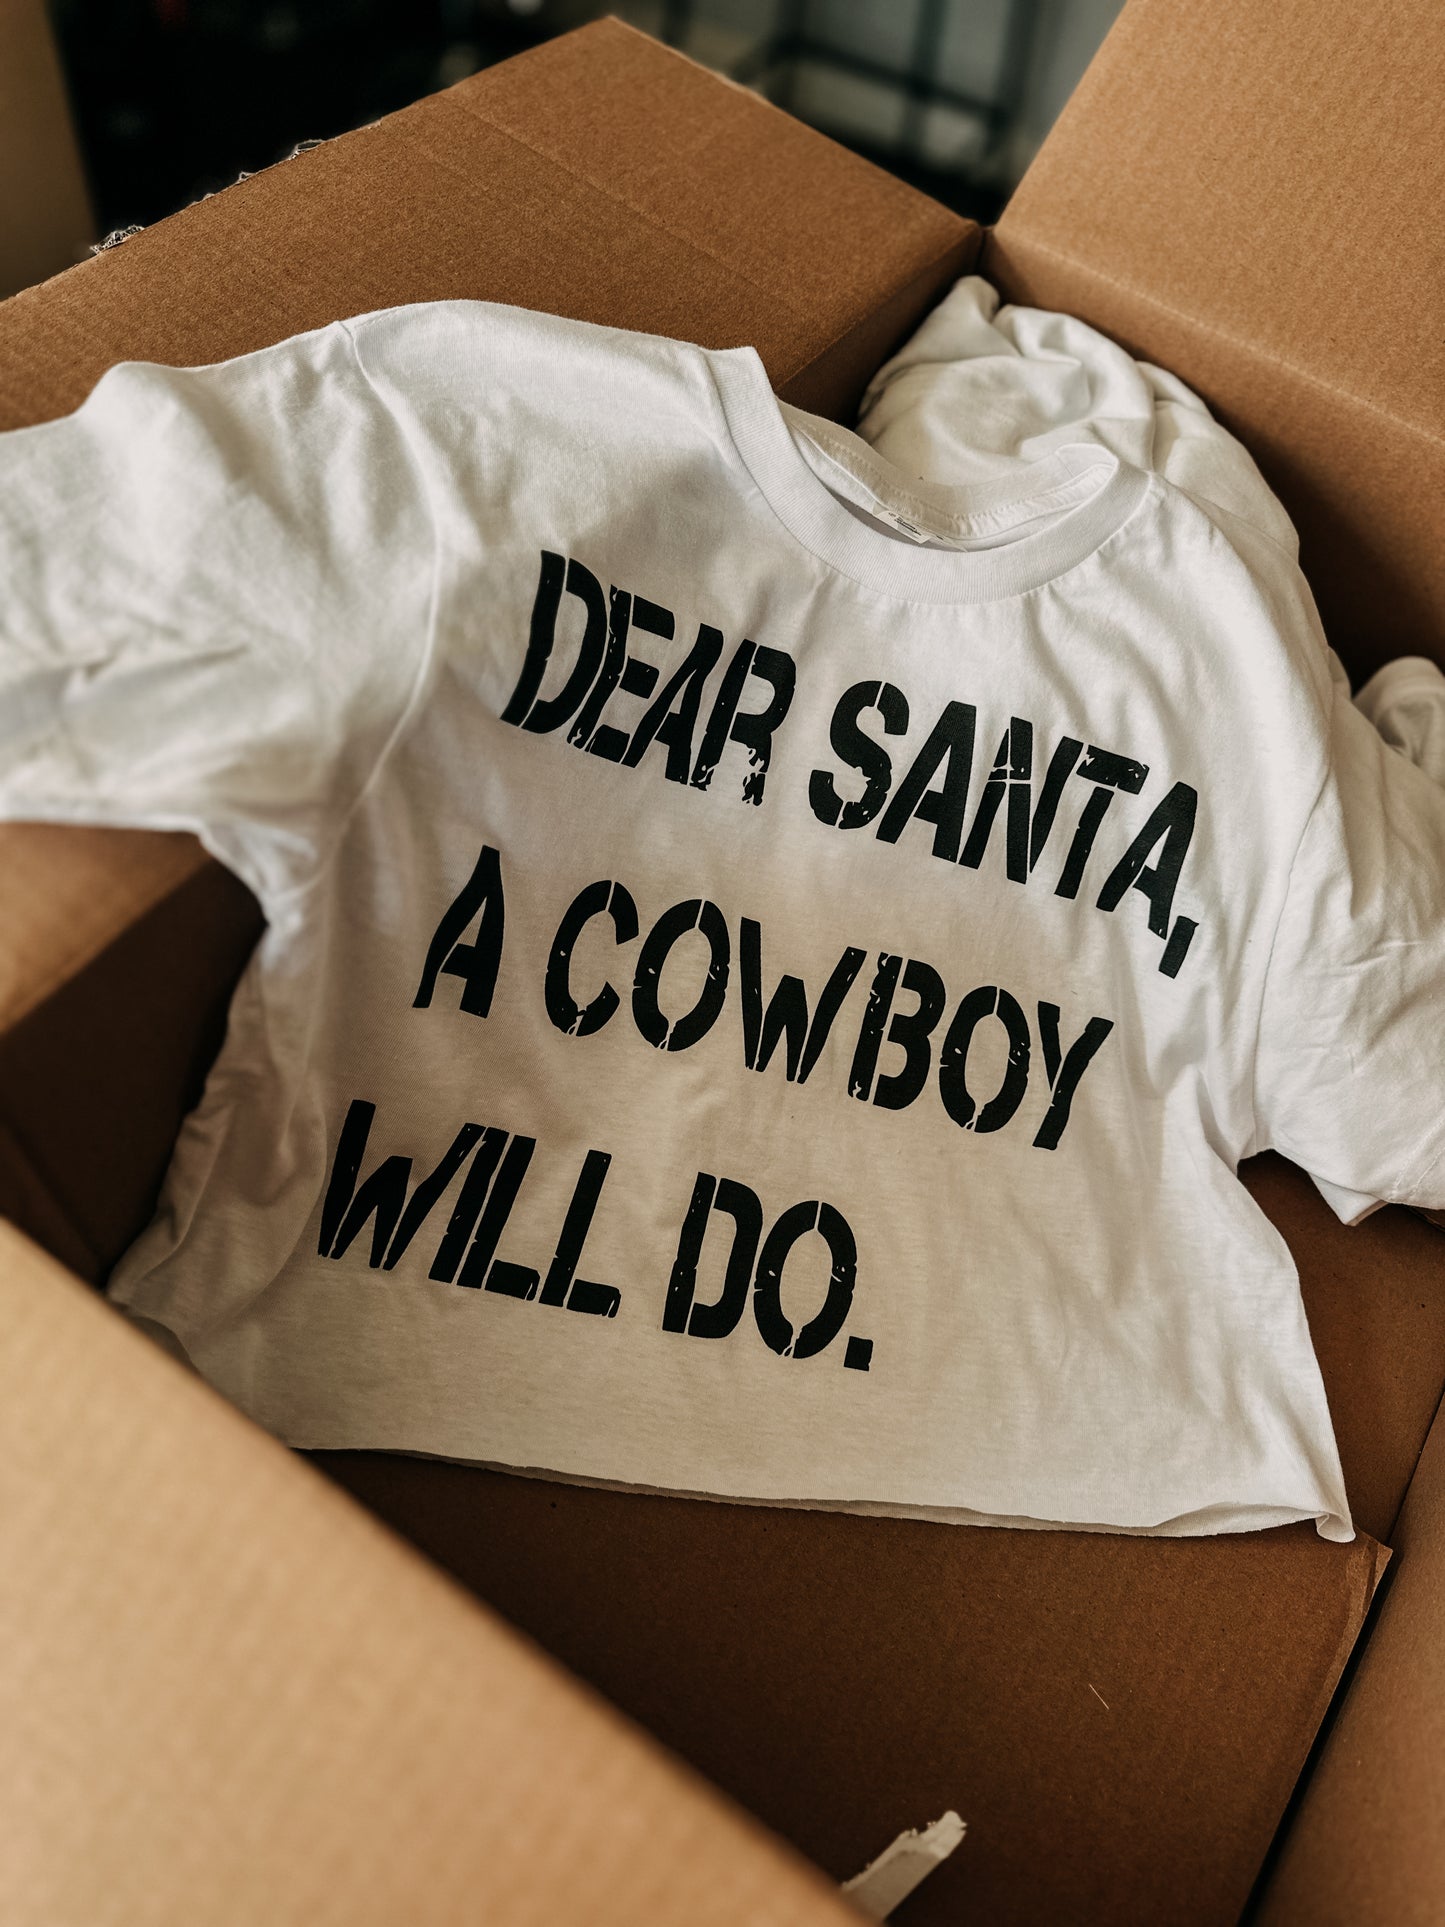 “Dear Santa a cowboy will do” crop tee